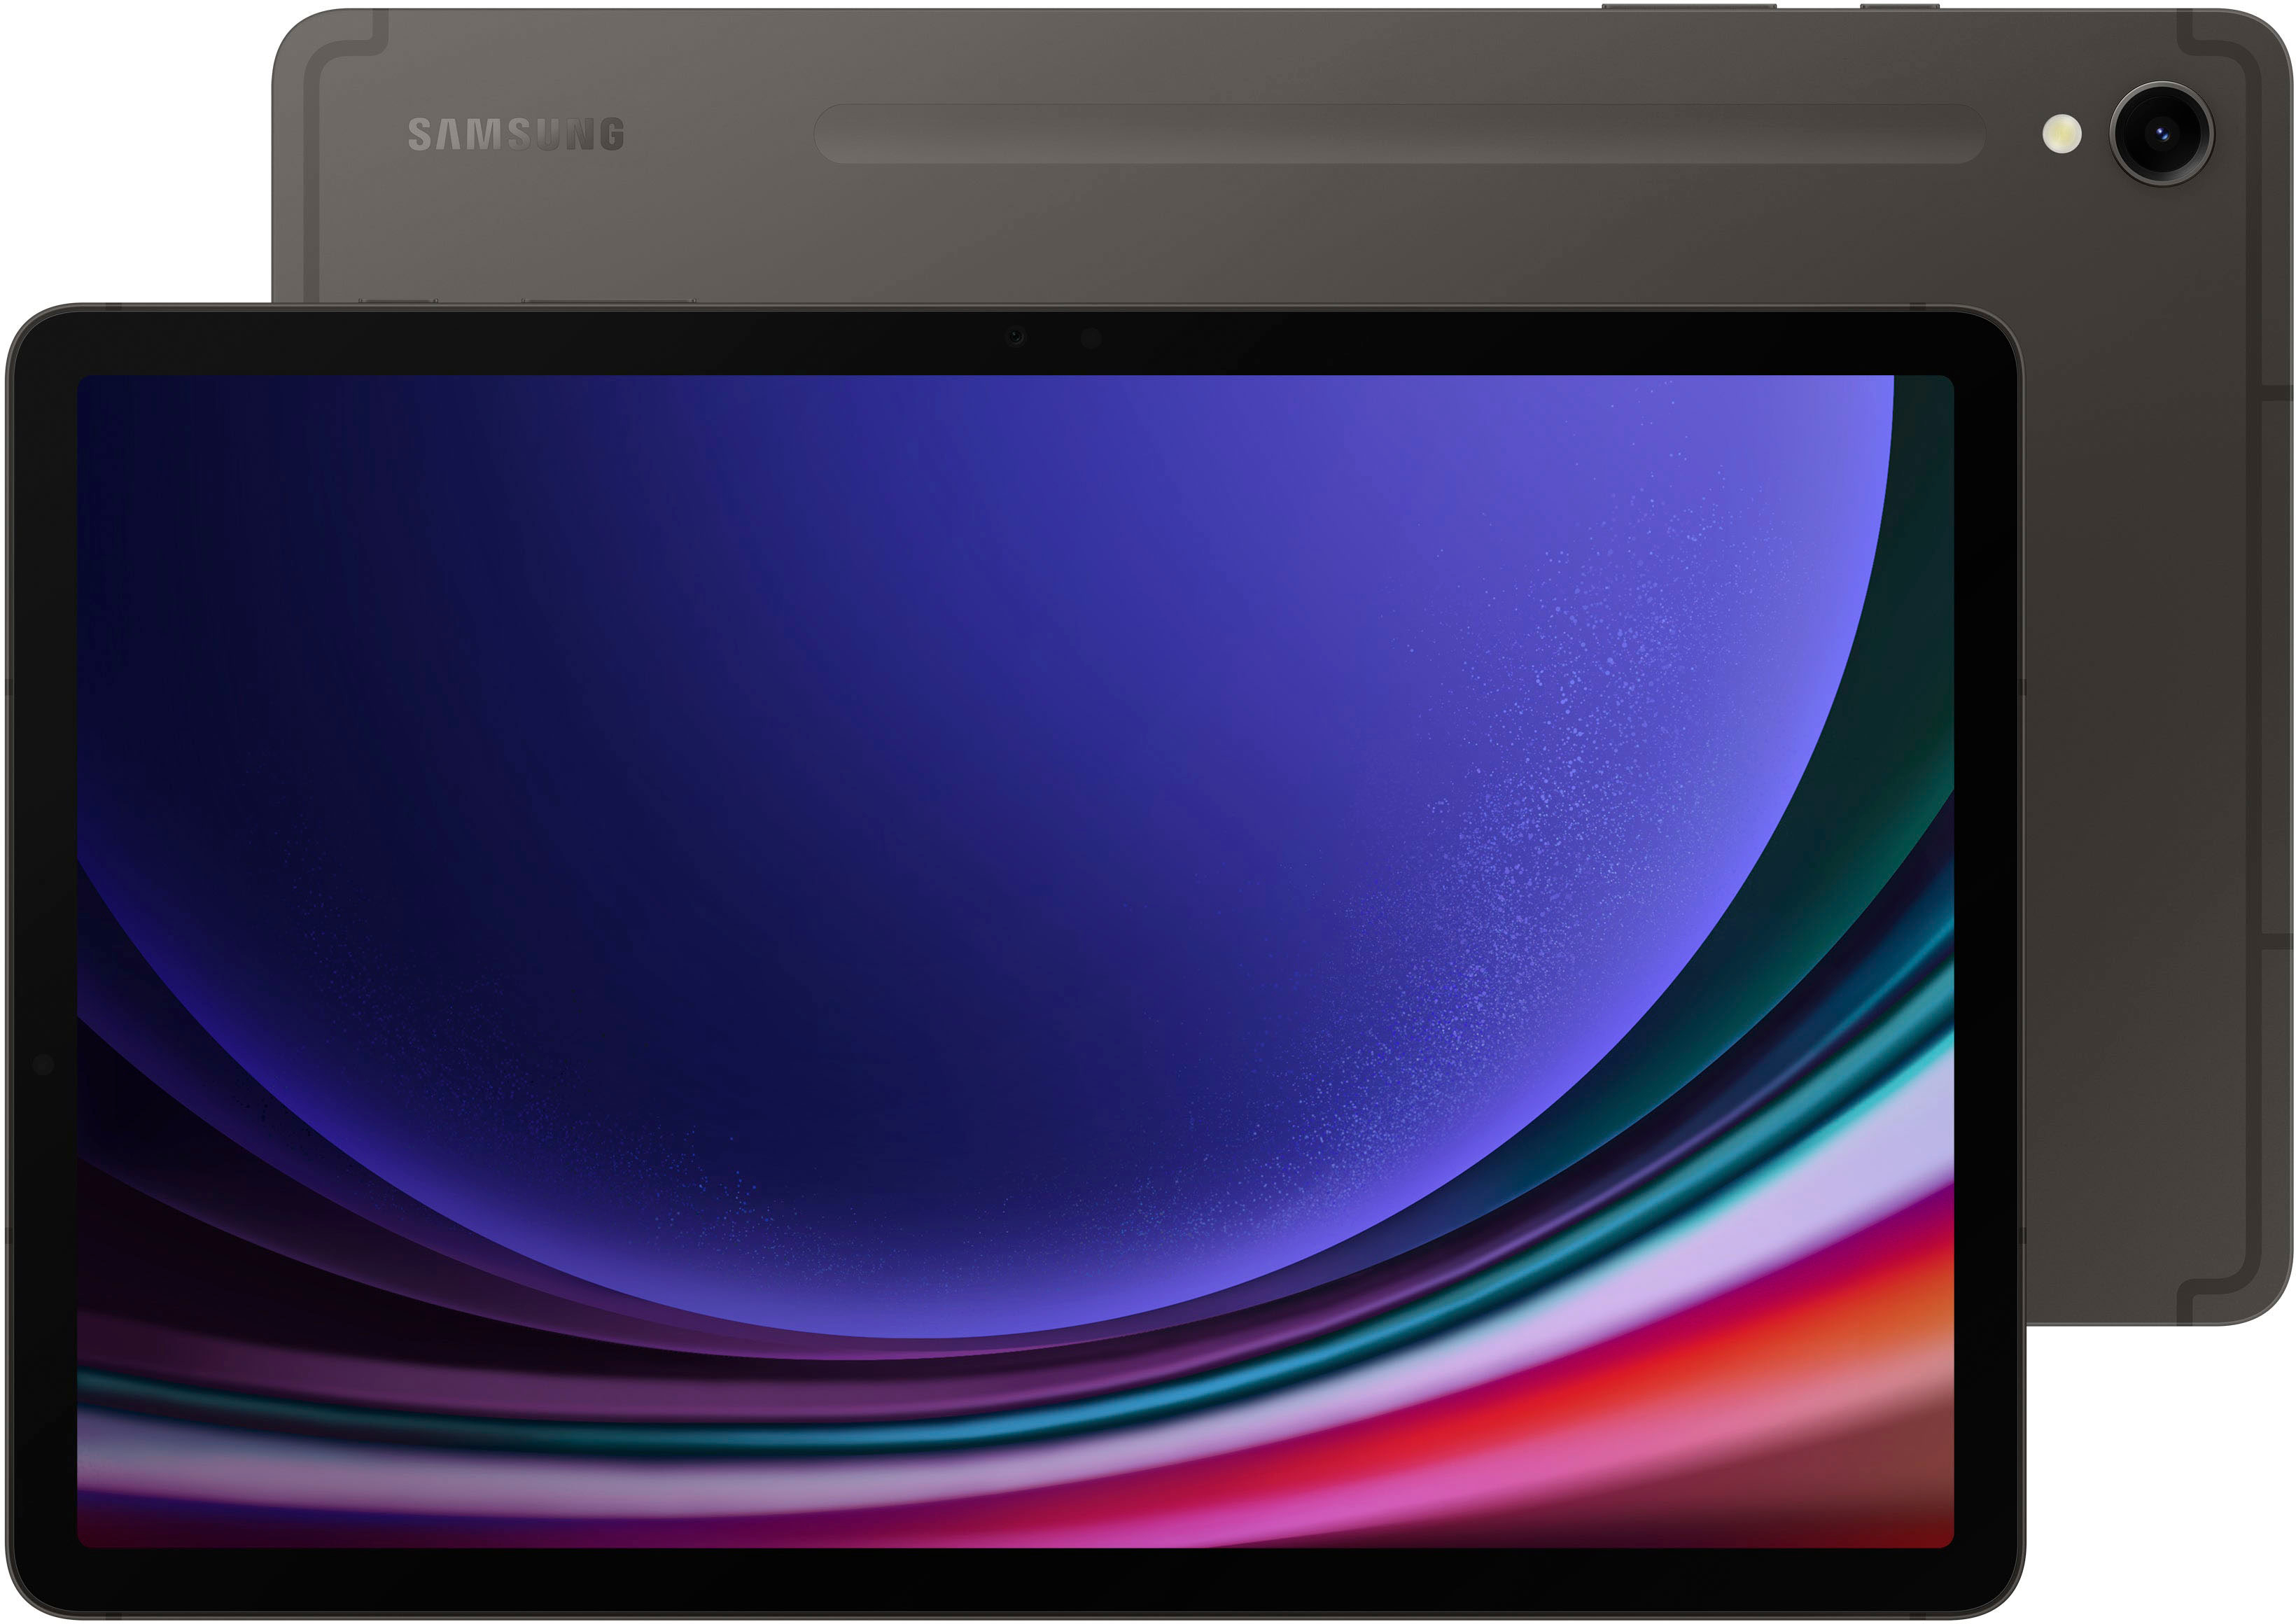 Samsung Galaxy Tab S9 FE Plus review